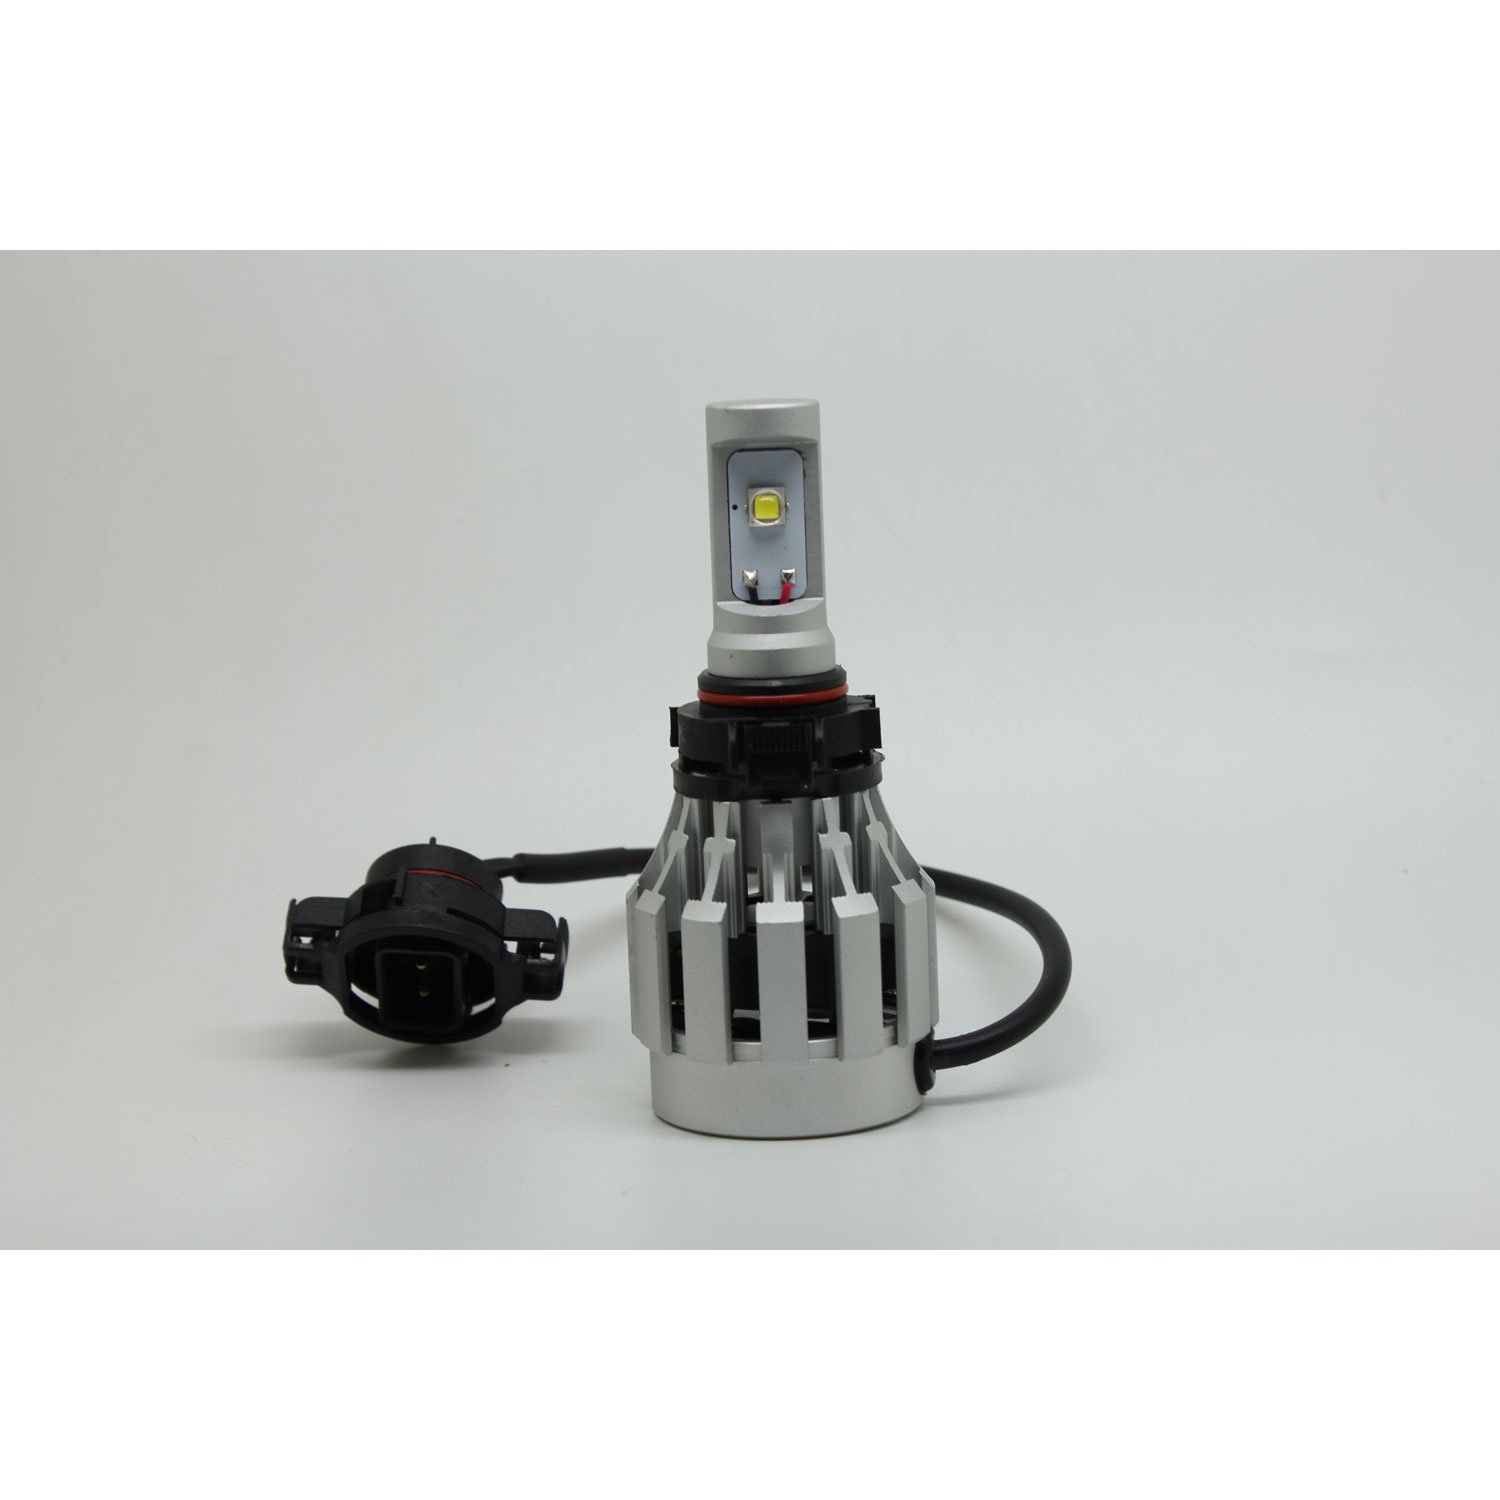 Cree XM-L2 LED Kit H16 Bulb Replacement